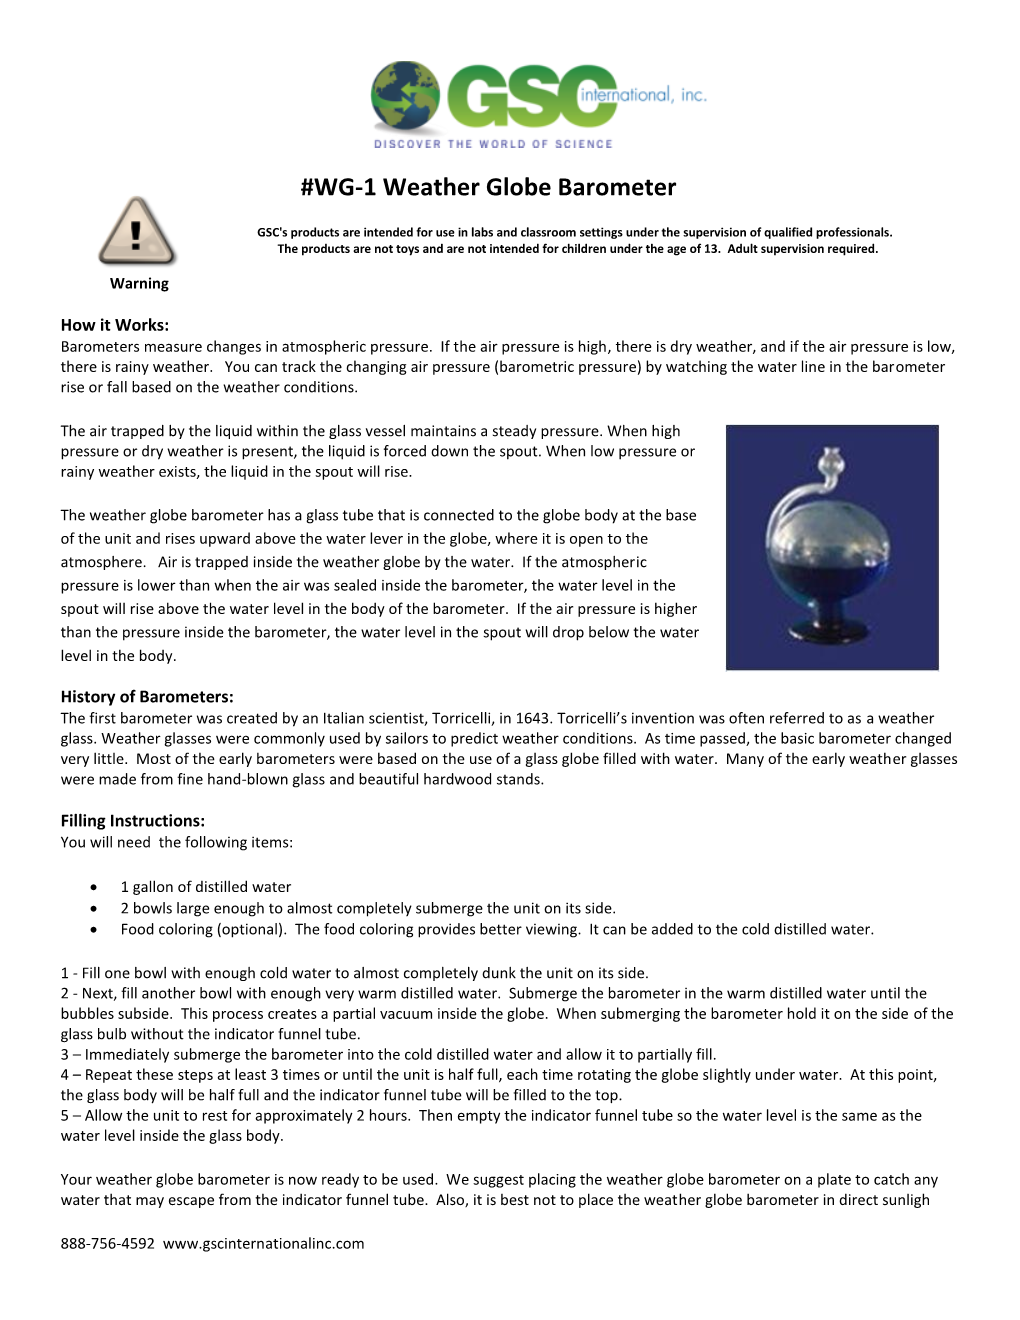 WG-1 Weather Globe Barometer